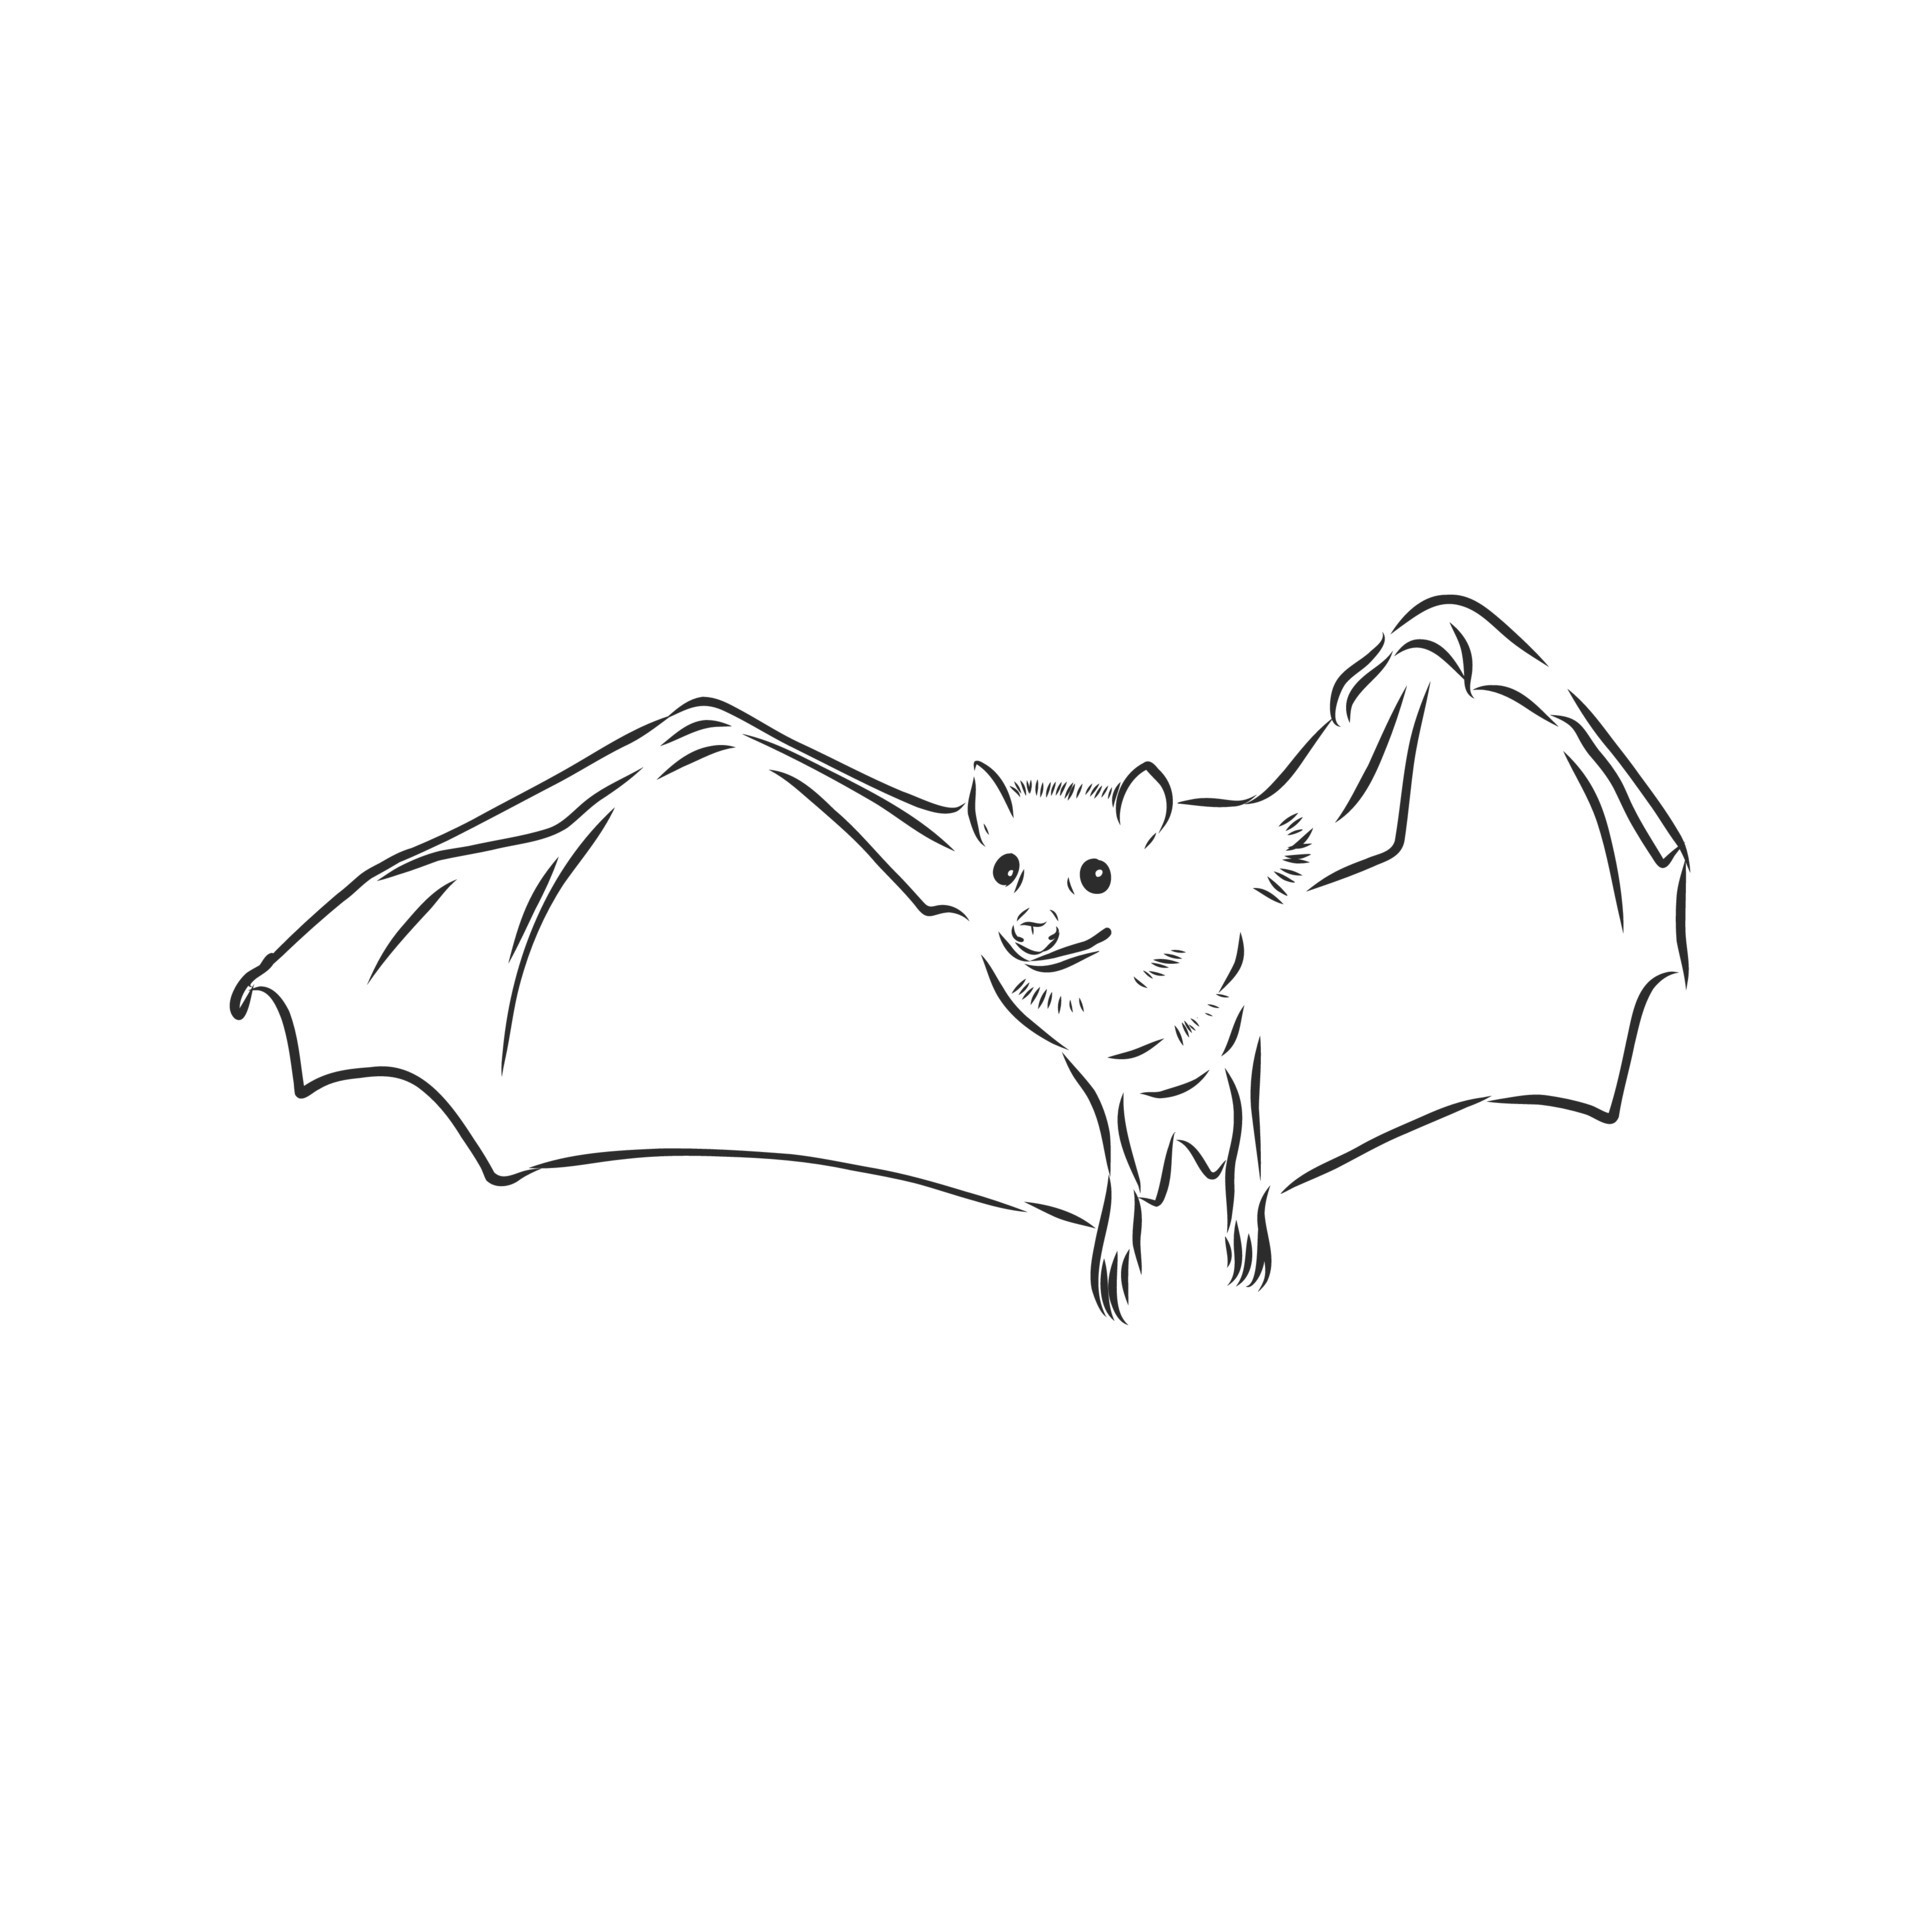 Share more than 147 bat bird drawing best - vietkidsiq.edu.vn